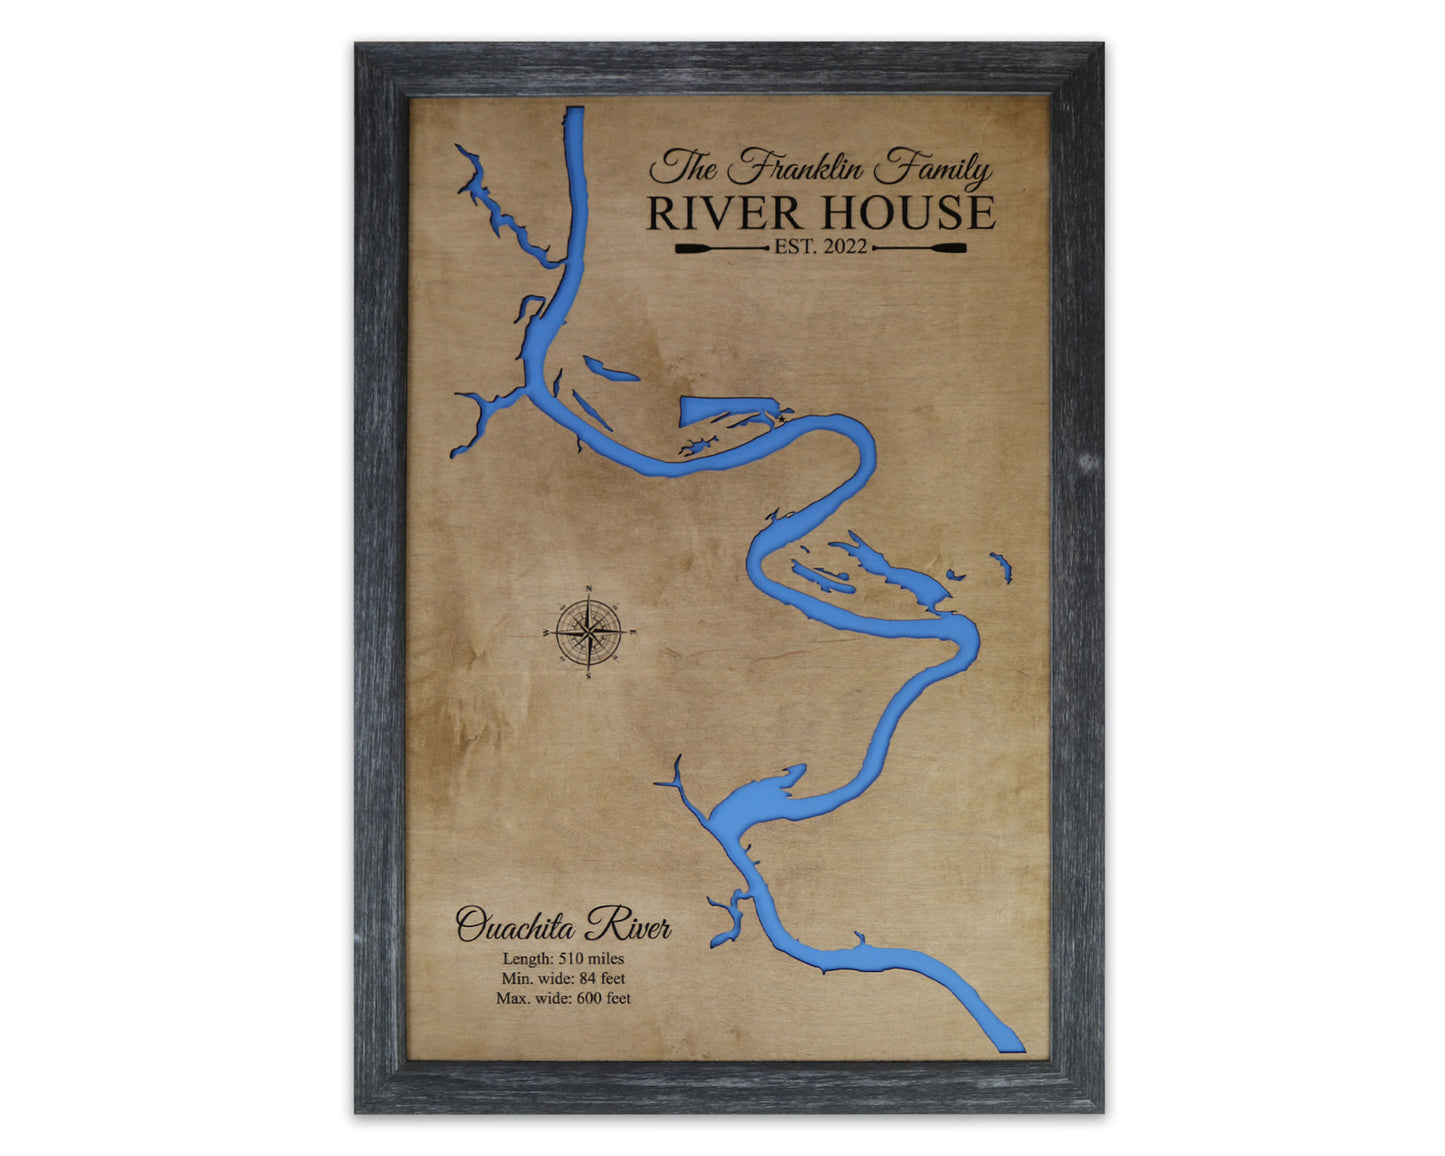 Wood River Maps - Notting Hill Designs - Custom Wood Maps